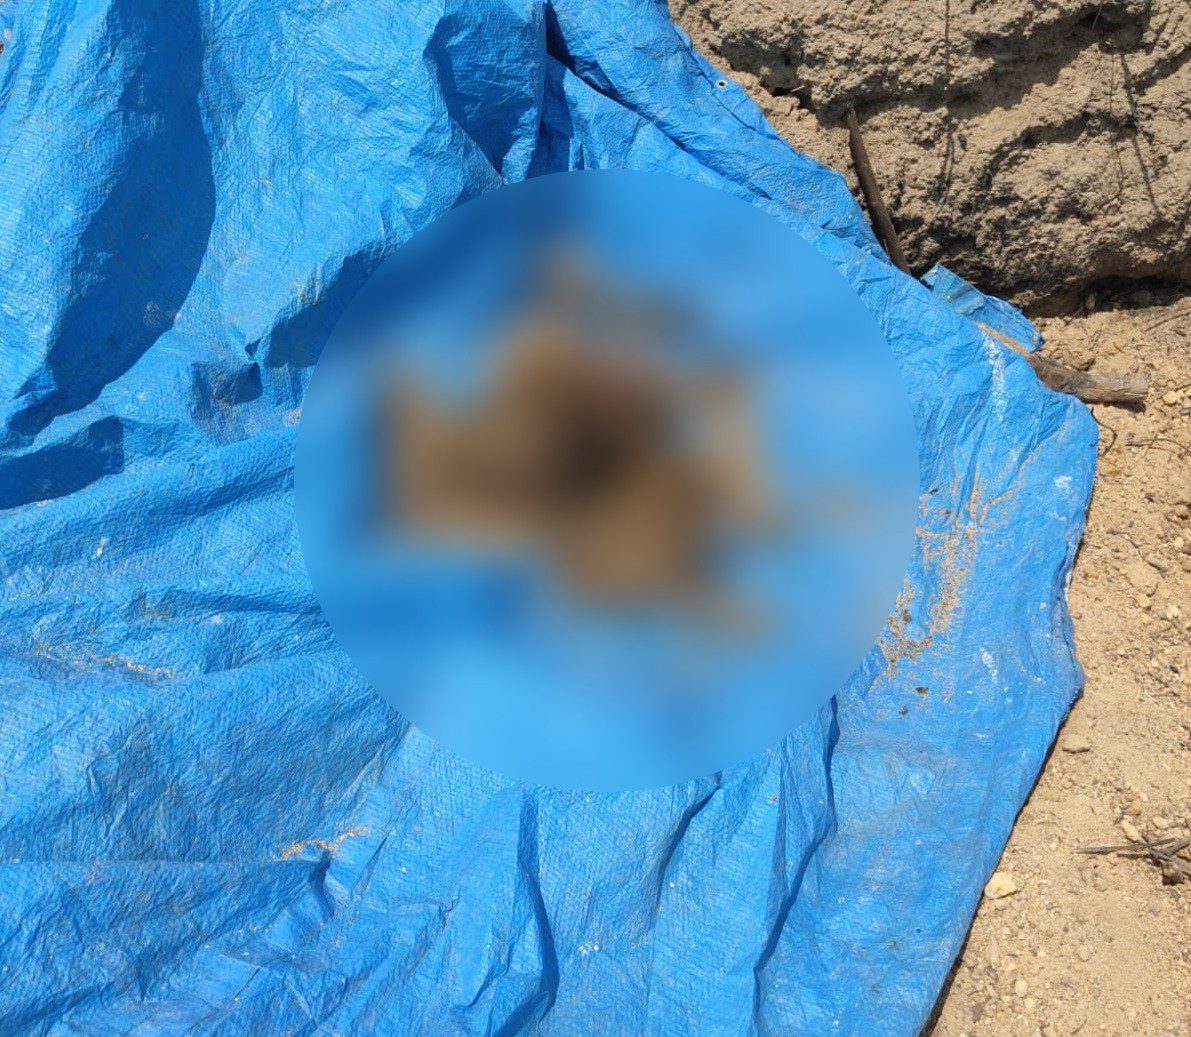 Polícia encontra ossada humana enterrada próxima a garimpo de MT